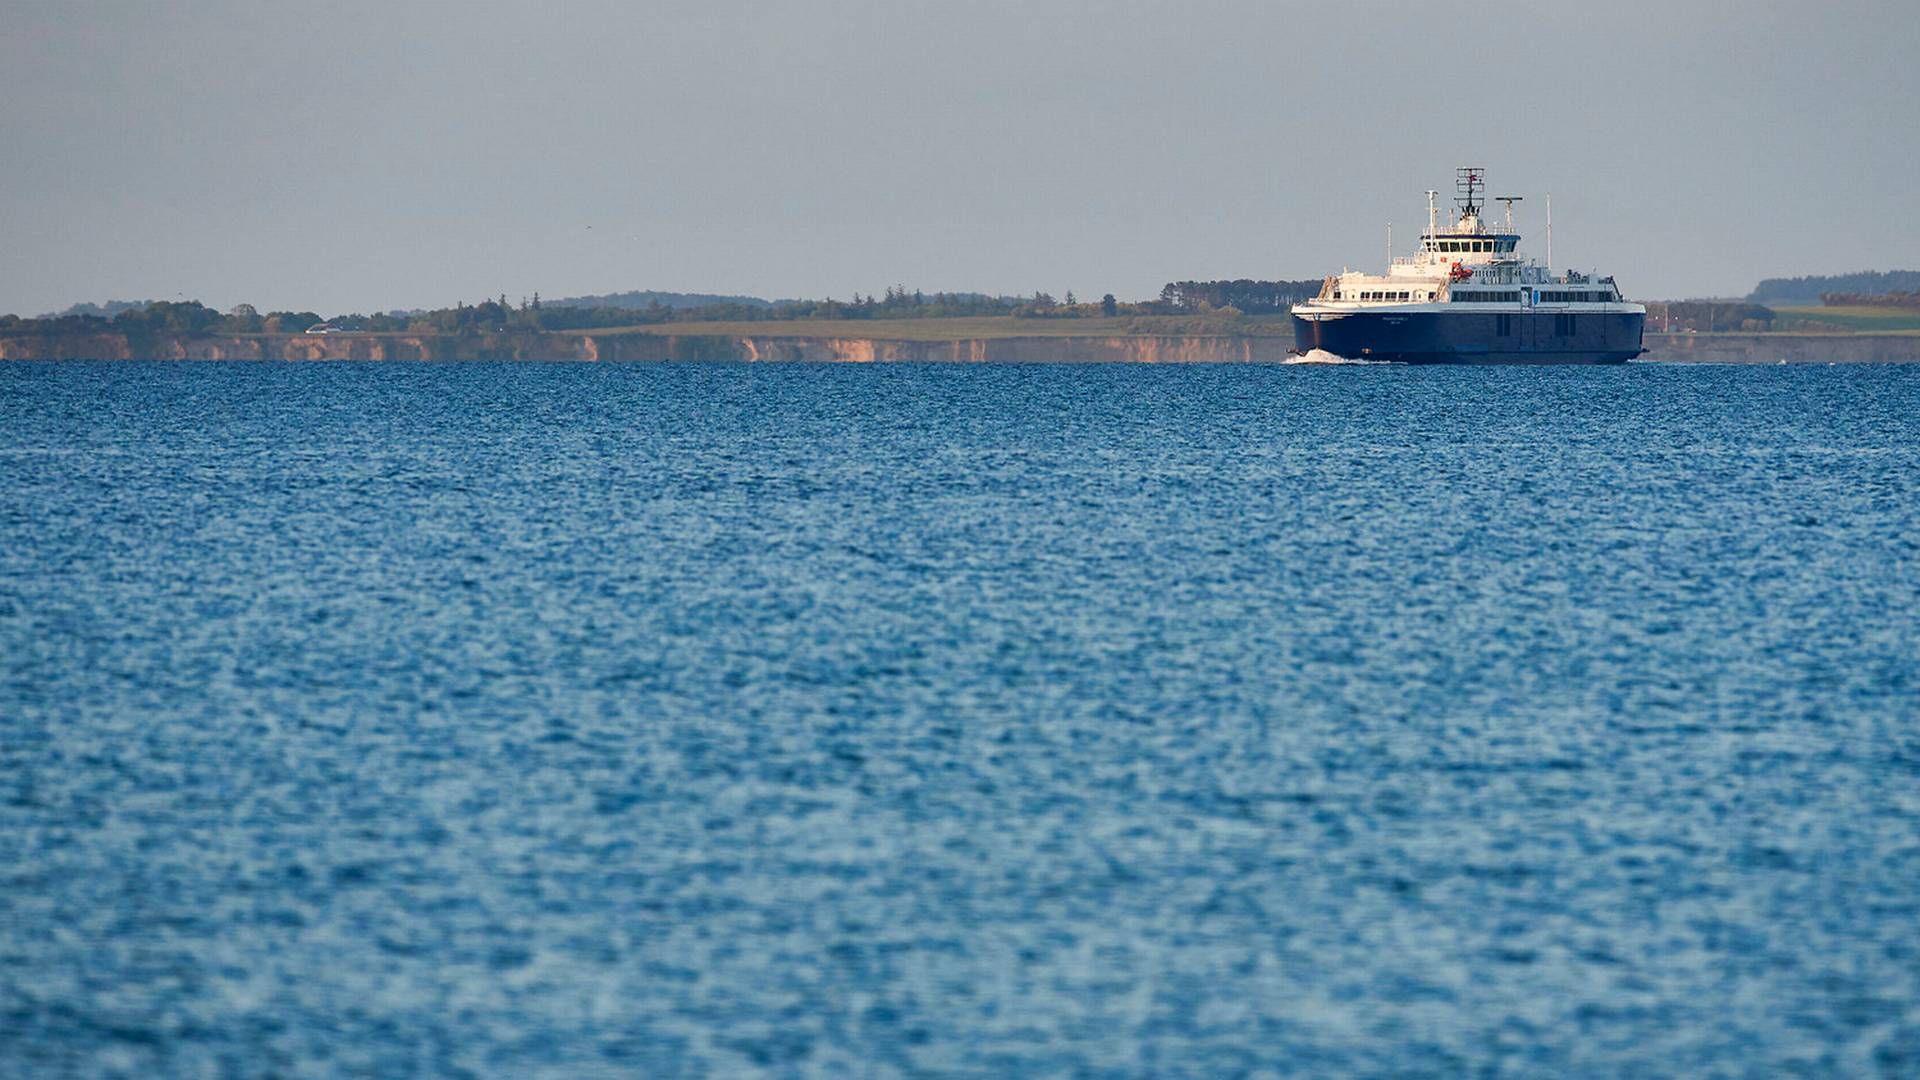 Samsø-færgen Prinsesse Isabella bliver måske en dag afløst af en broforbindelse, som pensionskasser finansierer. | Foto: Ritzau Scanpix/Claus Bonnerup